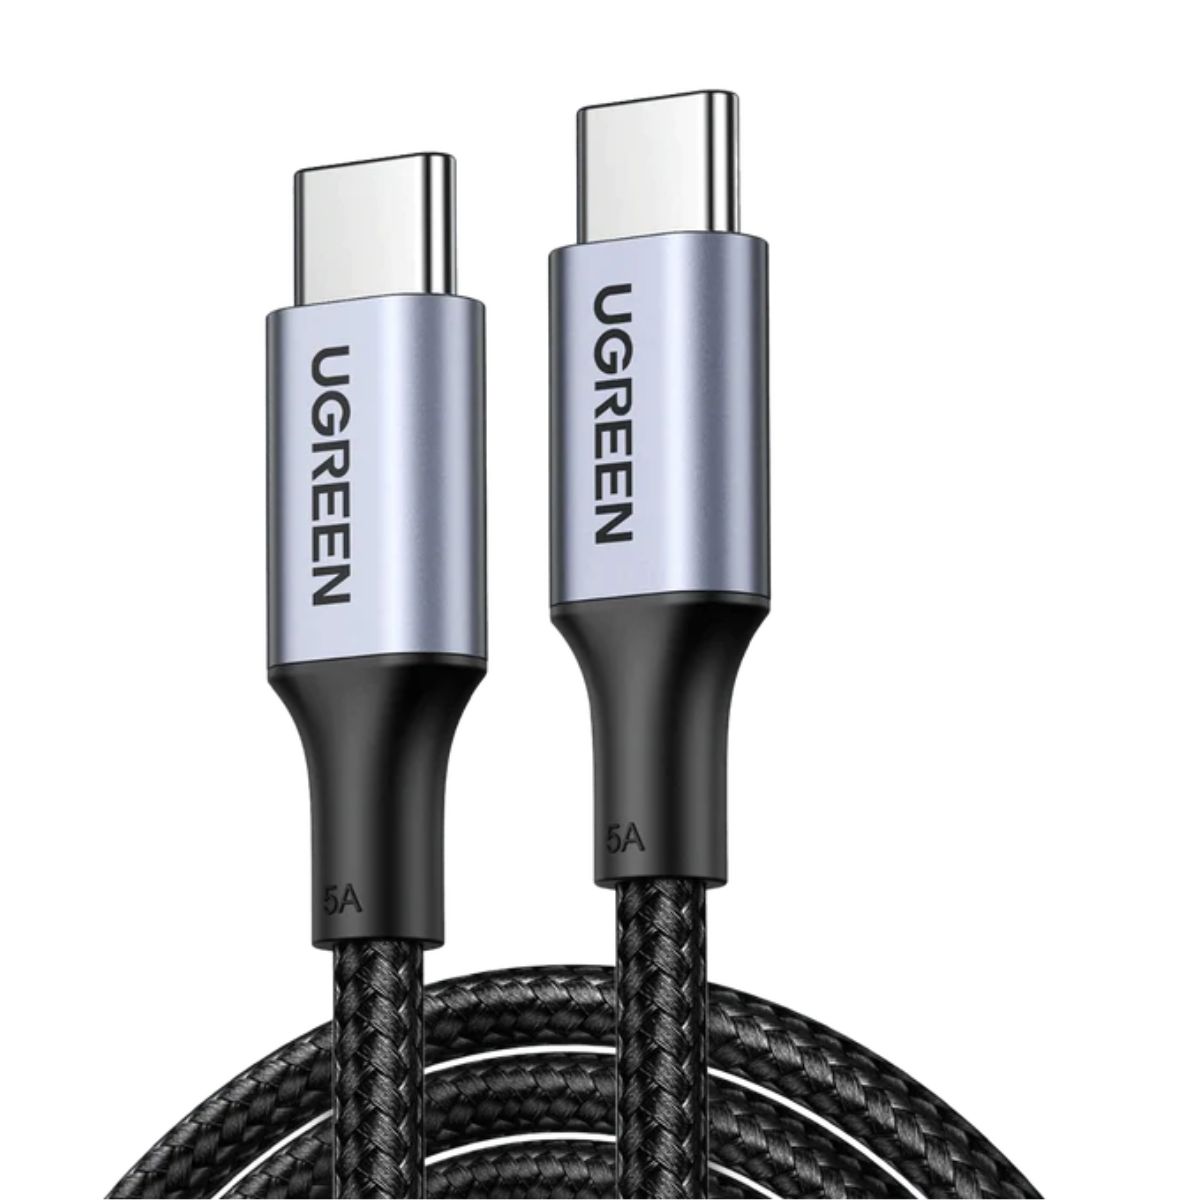 Cáp sạc nhanh dài 50cm USB-C đến USB-C Ugreen 20478 US316 màu đen, hỗ trợ sạc nhanh 5A, công suất 100W